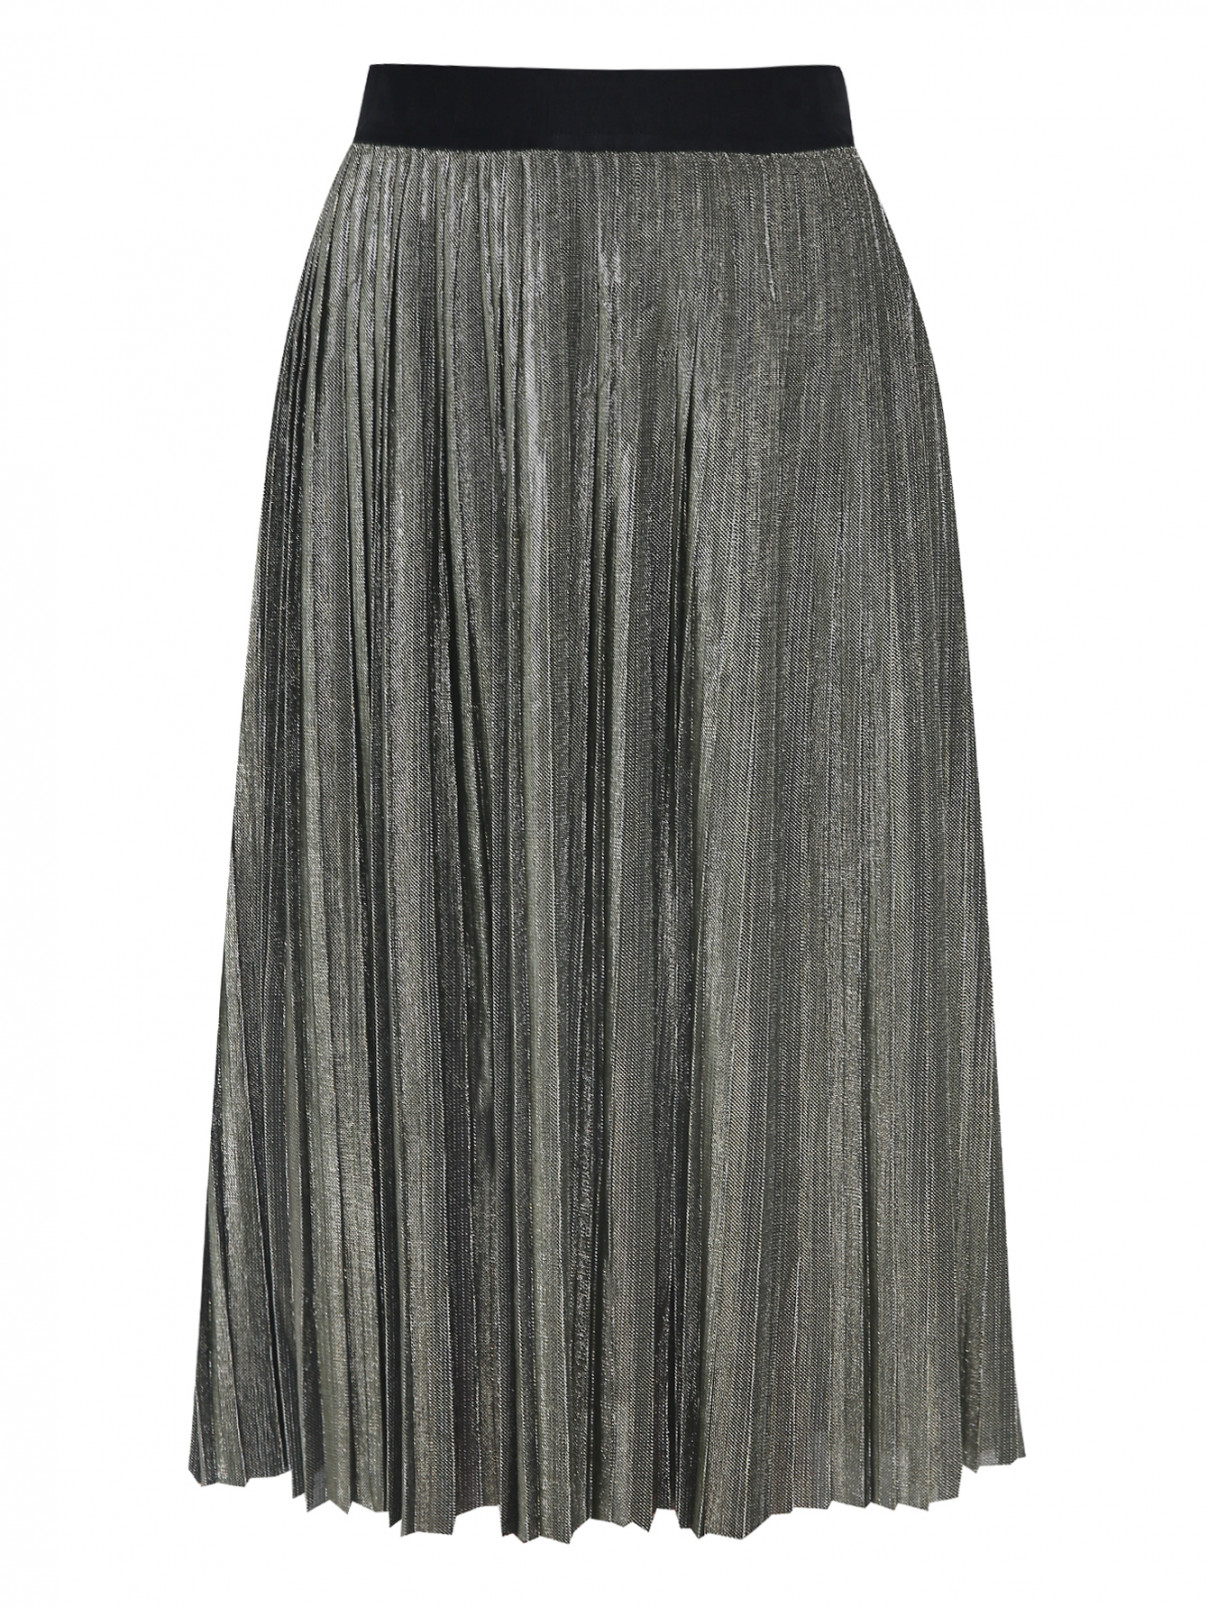 Плиссированная юбка на резинке Karl Lagerfeld  –  Общий вид  – Цвет:  Золотой